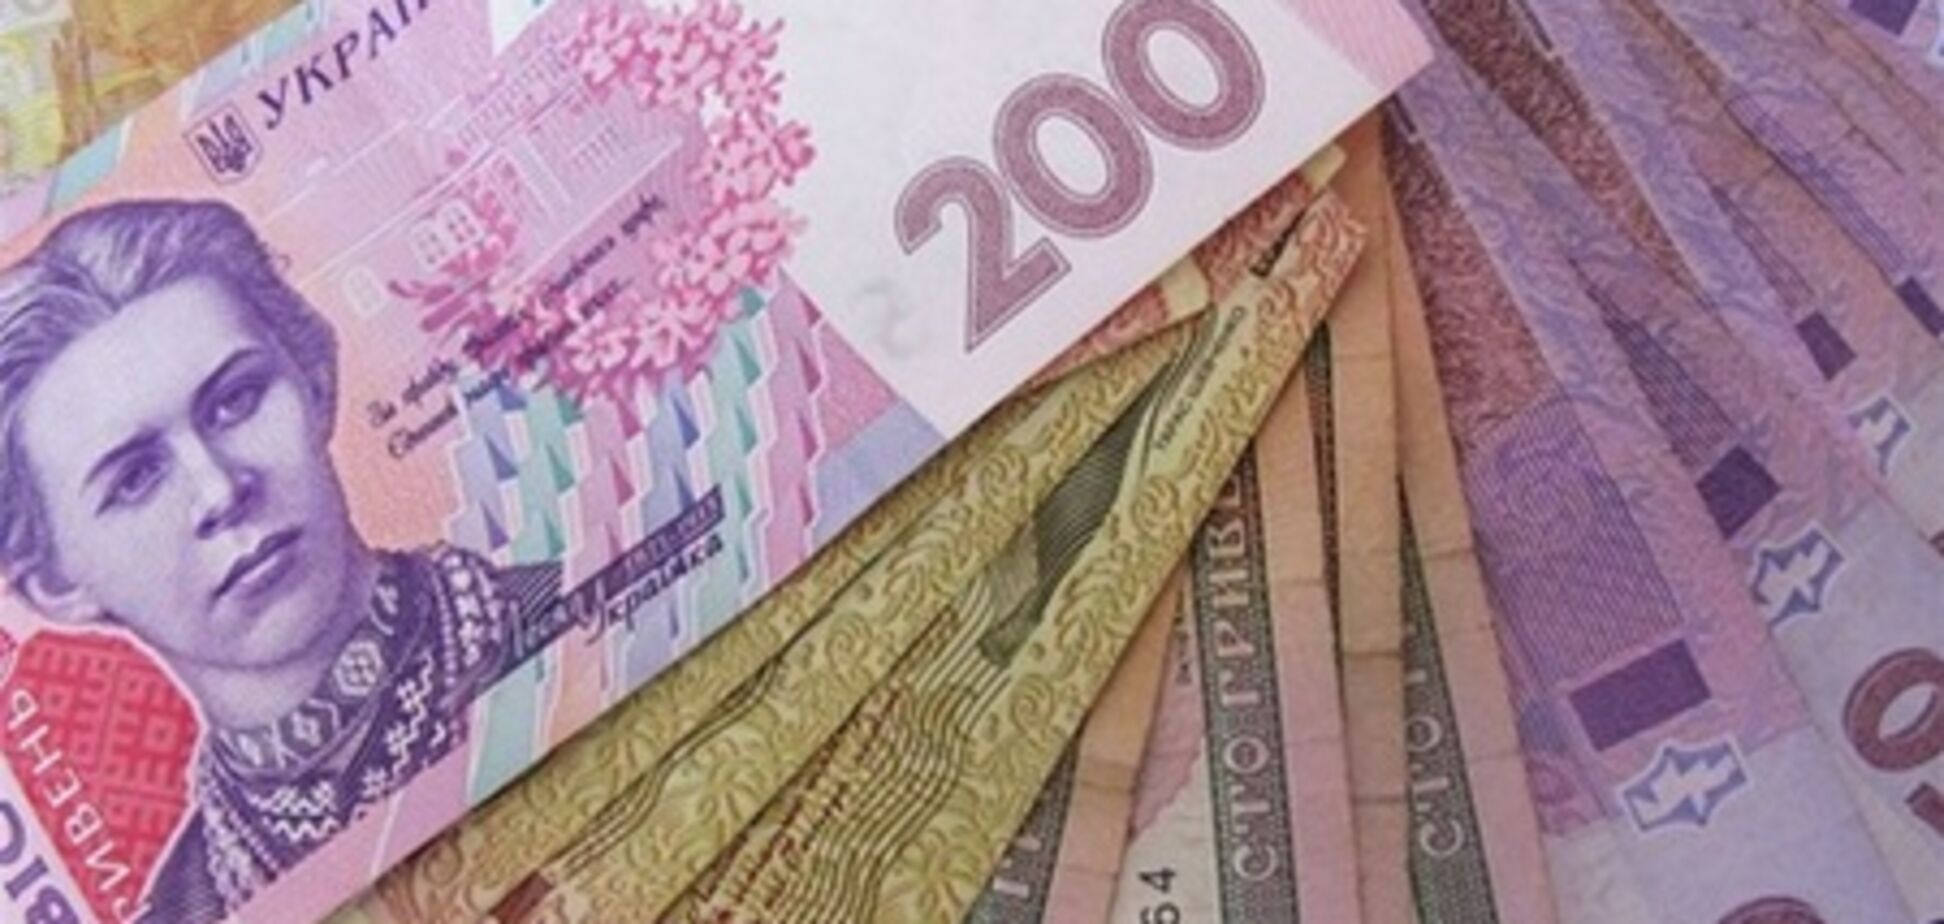 Нацбанк раздаст 'тысячу Януковича' через банкоматы